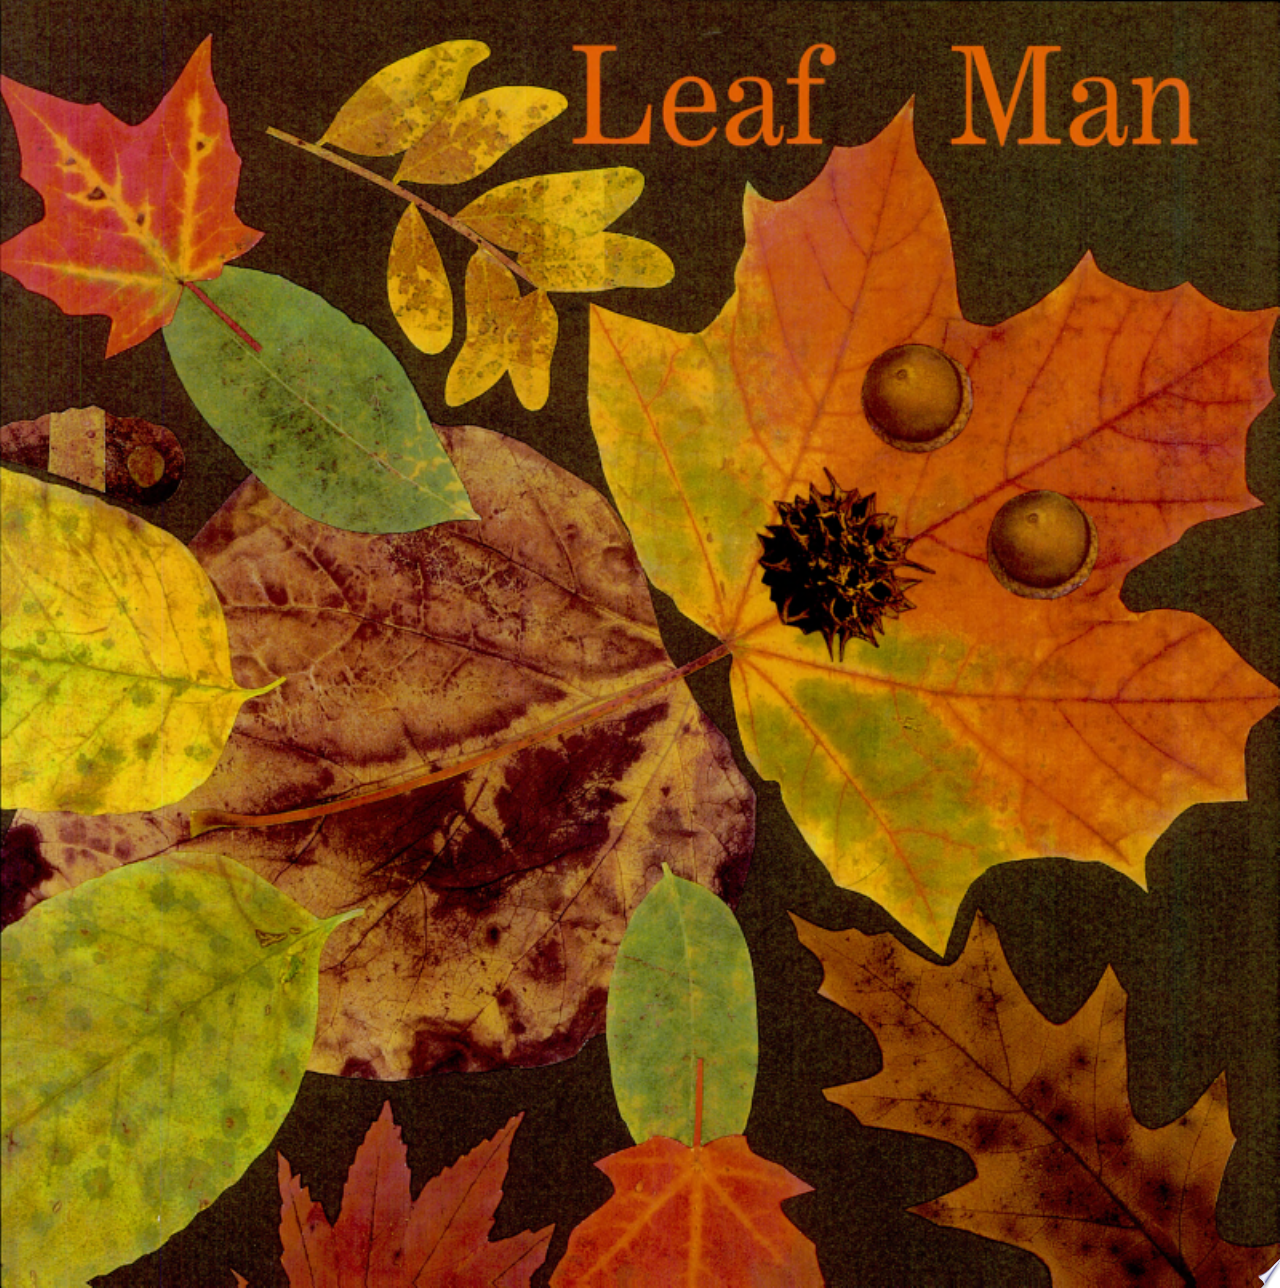 Image for "Leaf Man"